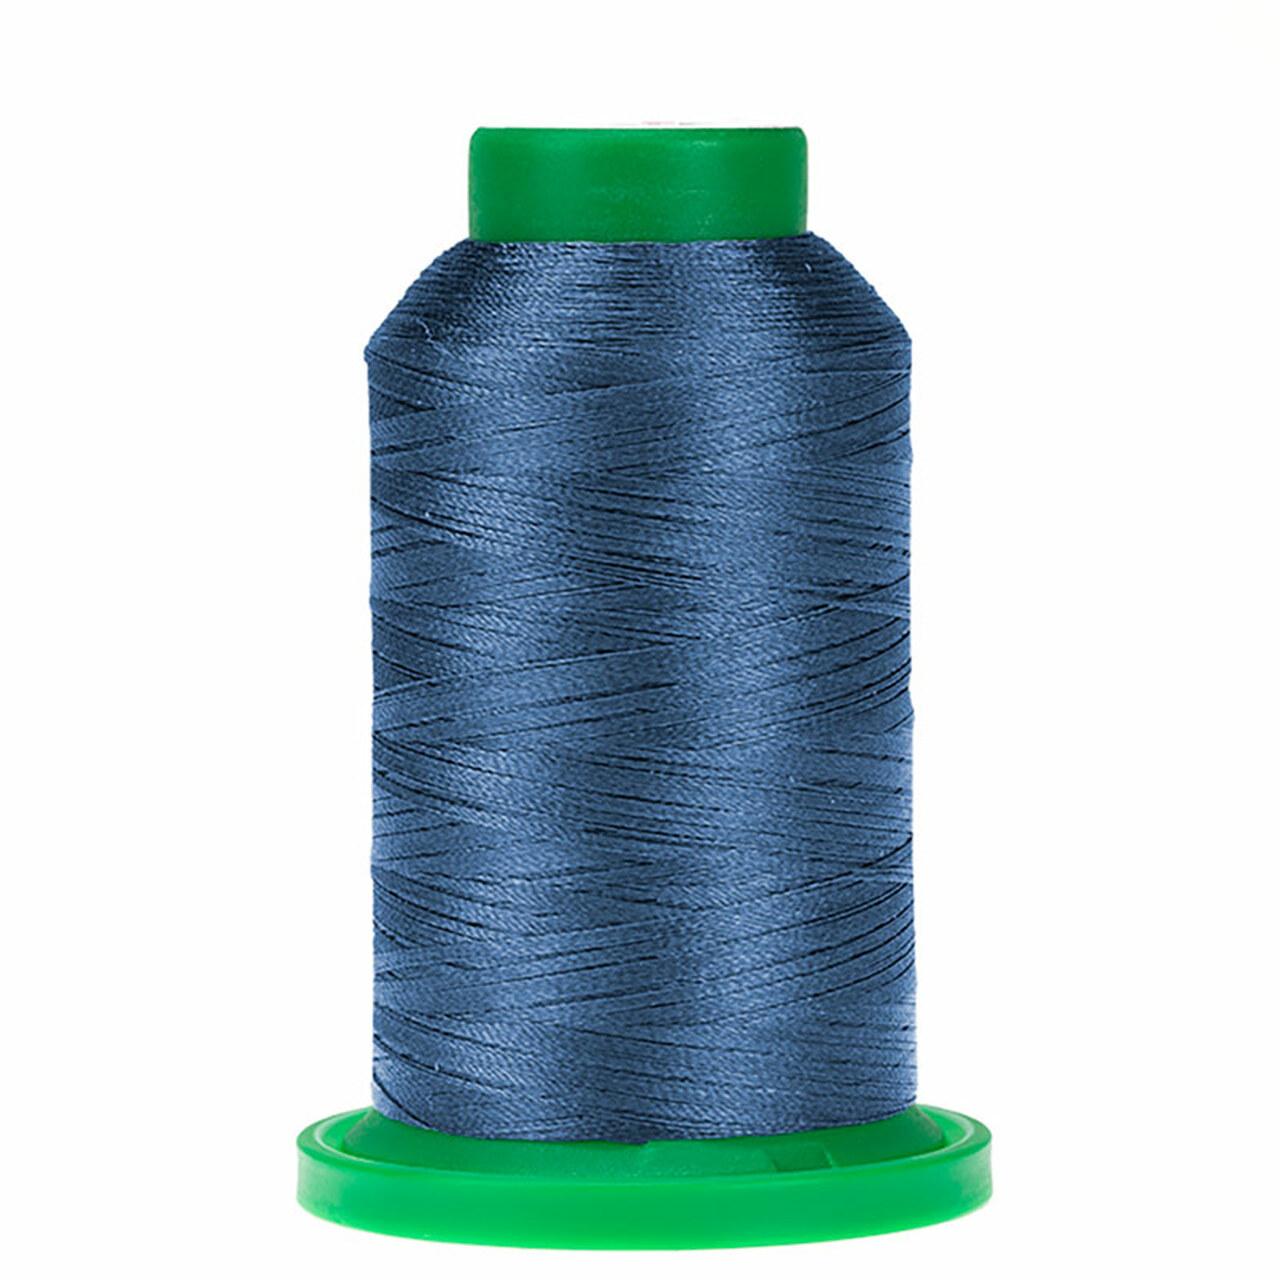 Thread - Isacord - Ocean Blue - 2922-3953